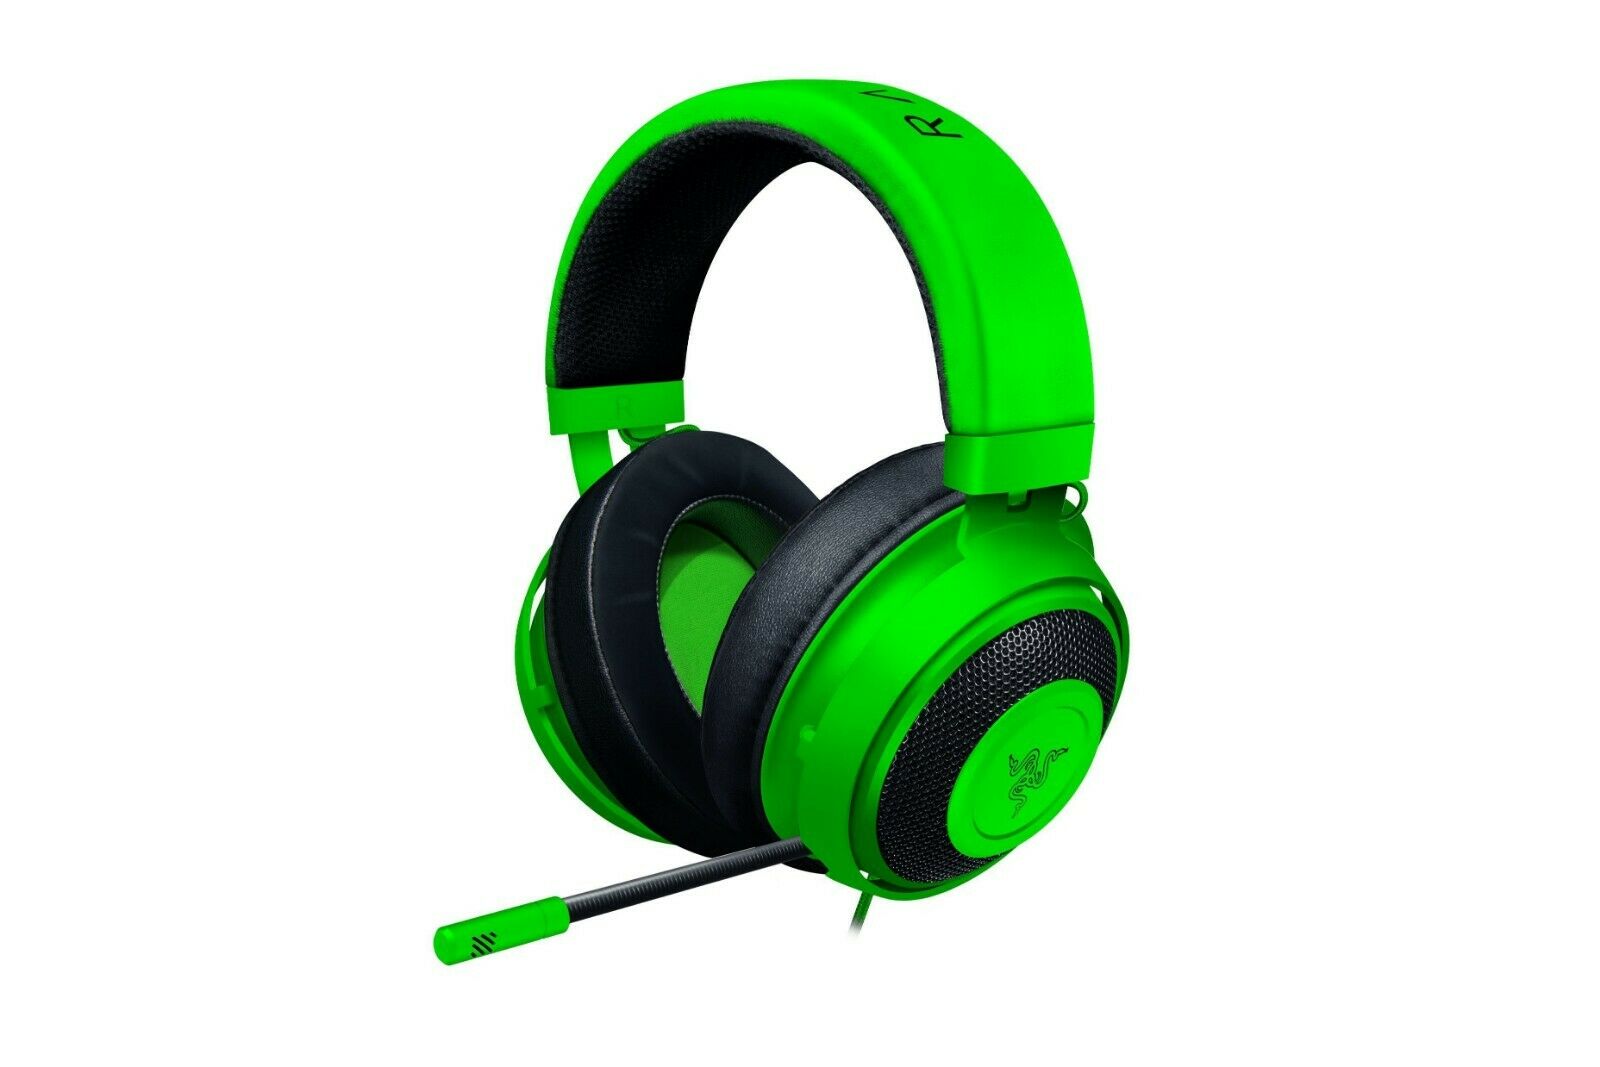 Kraken - Green Gaming Headset